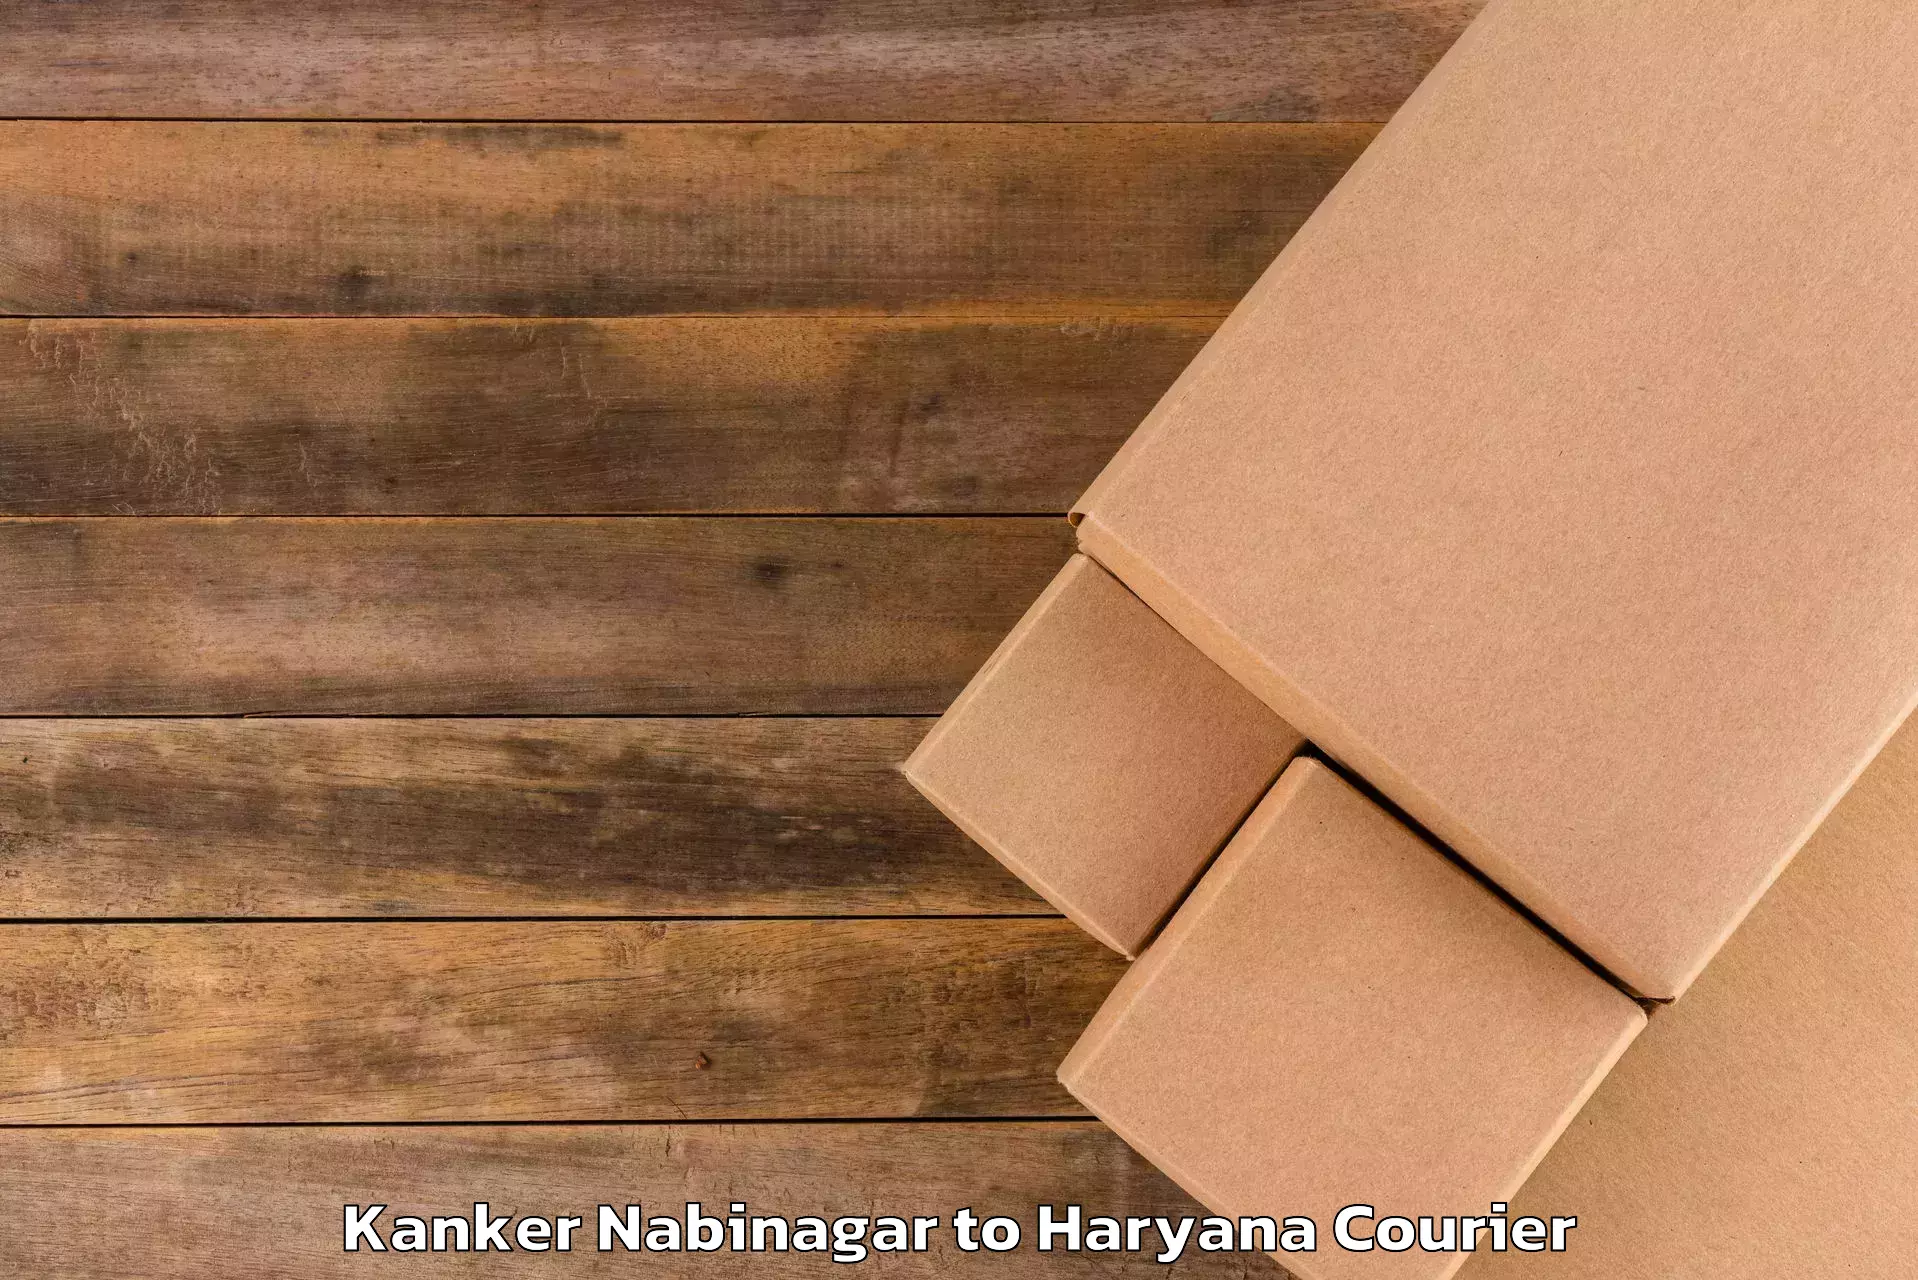 Luggage shipping management Kanker Nabinagar to Chaudhary Charan Singh Haryana Agricultural University Hisar